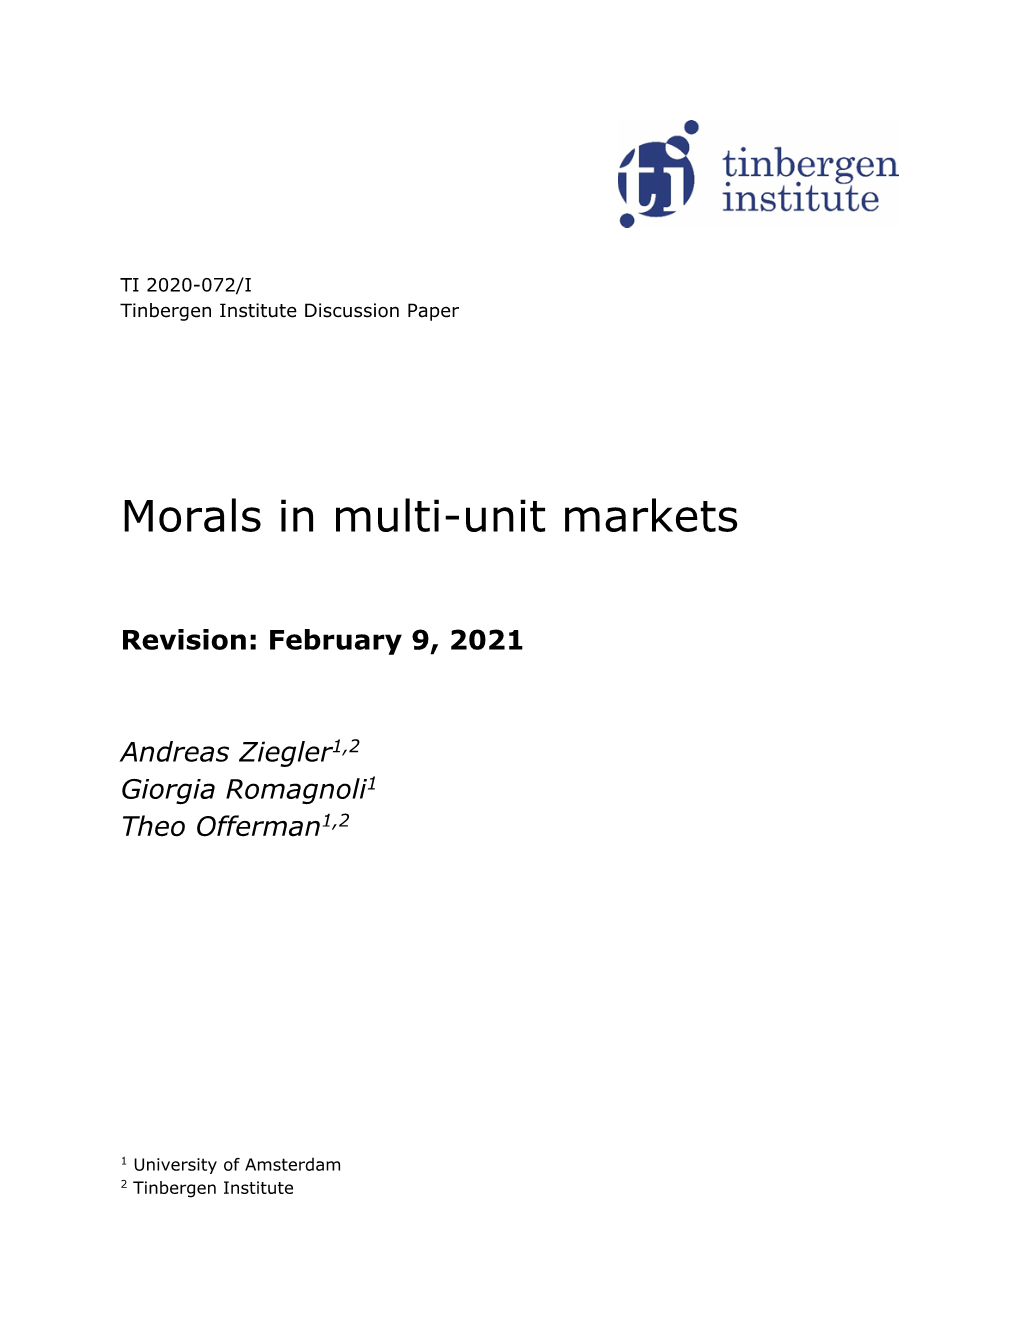 Morals in Multi-Unit Markets